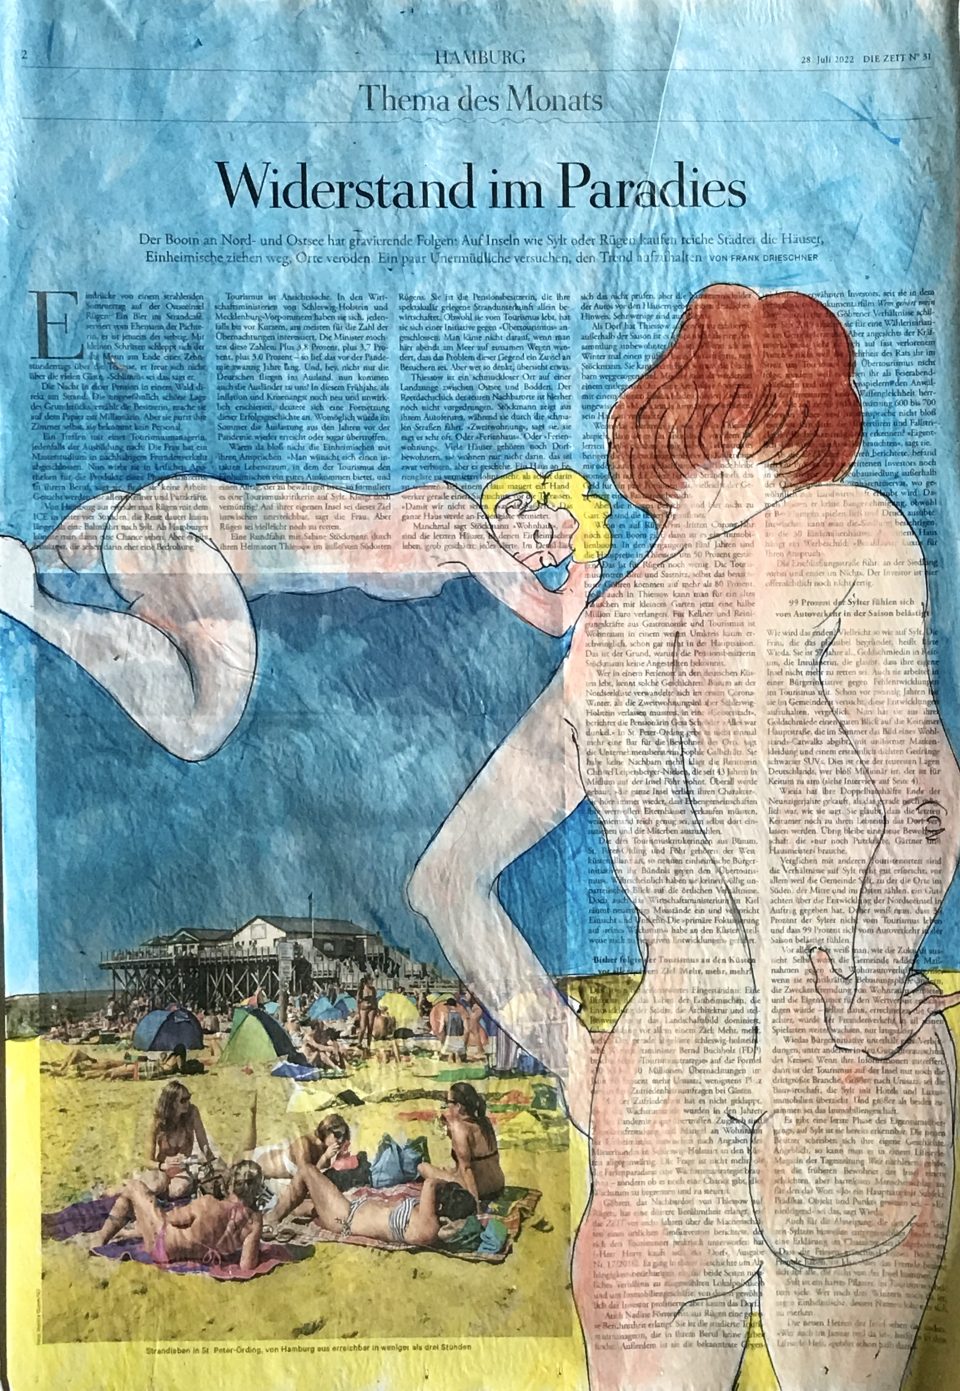 Widerstand im Paradies – zweimal weiblicher Akt, auf ganzer Zeitungsseite 56 x 40 cm mit Überschrift "Widerstand im Paradies"